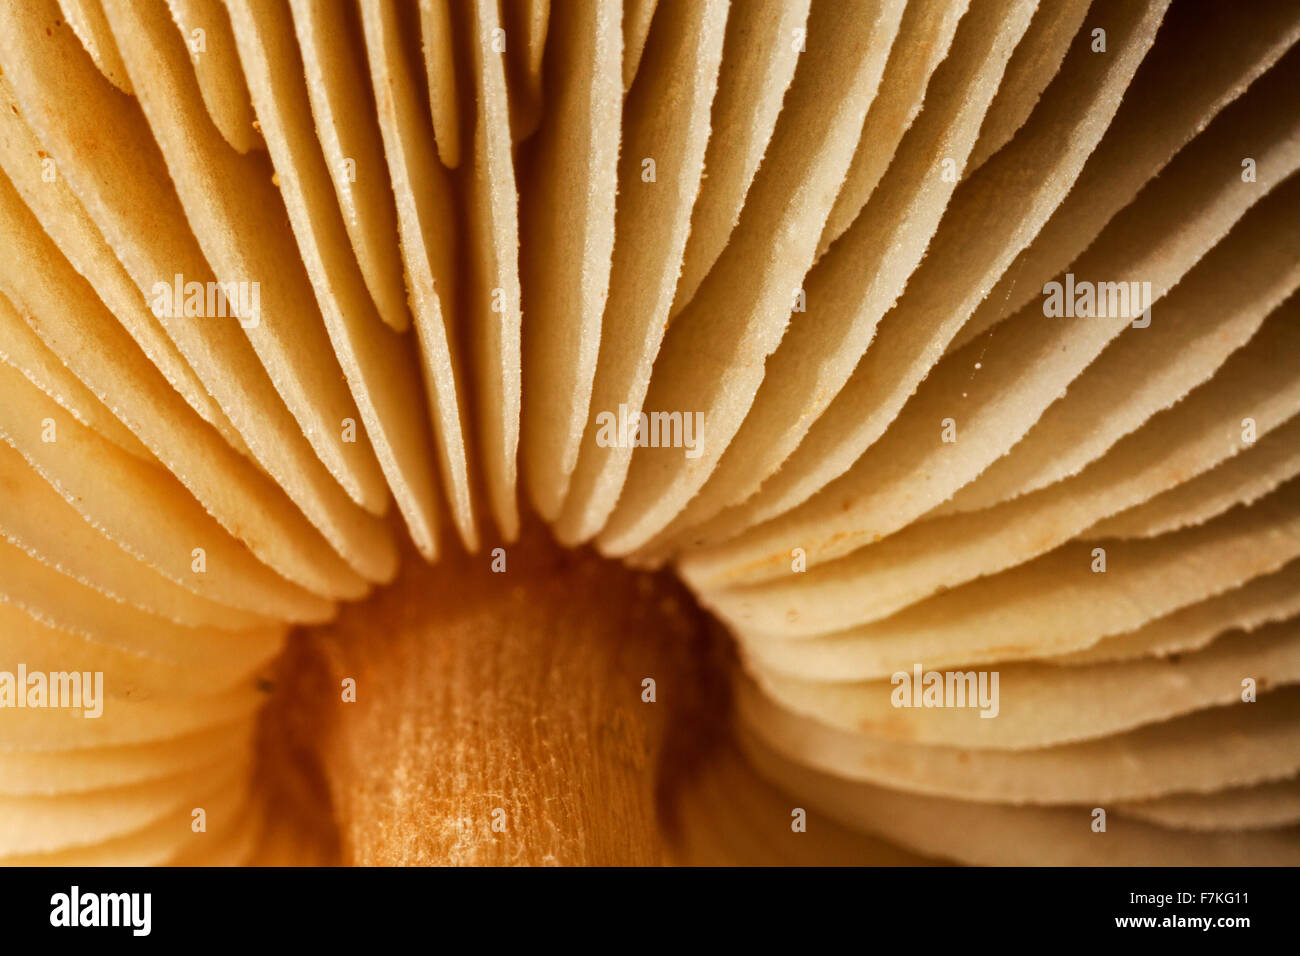 Testa a fungo, worm occhio della vista che mostra la parte inferiore del coperchio con le branchie / lamelle / Lamelle Foto Stock